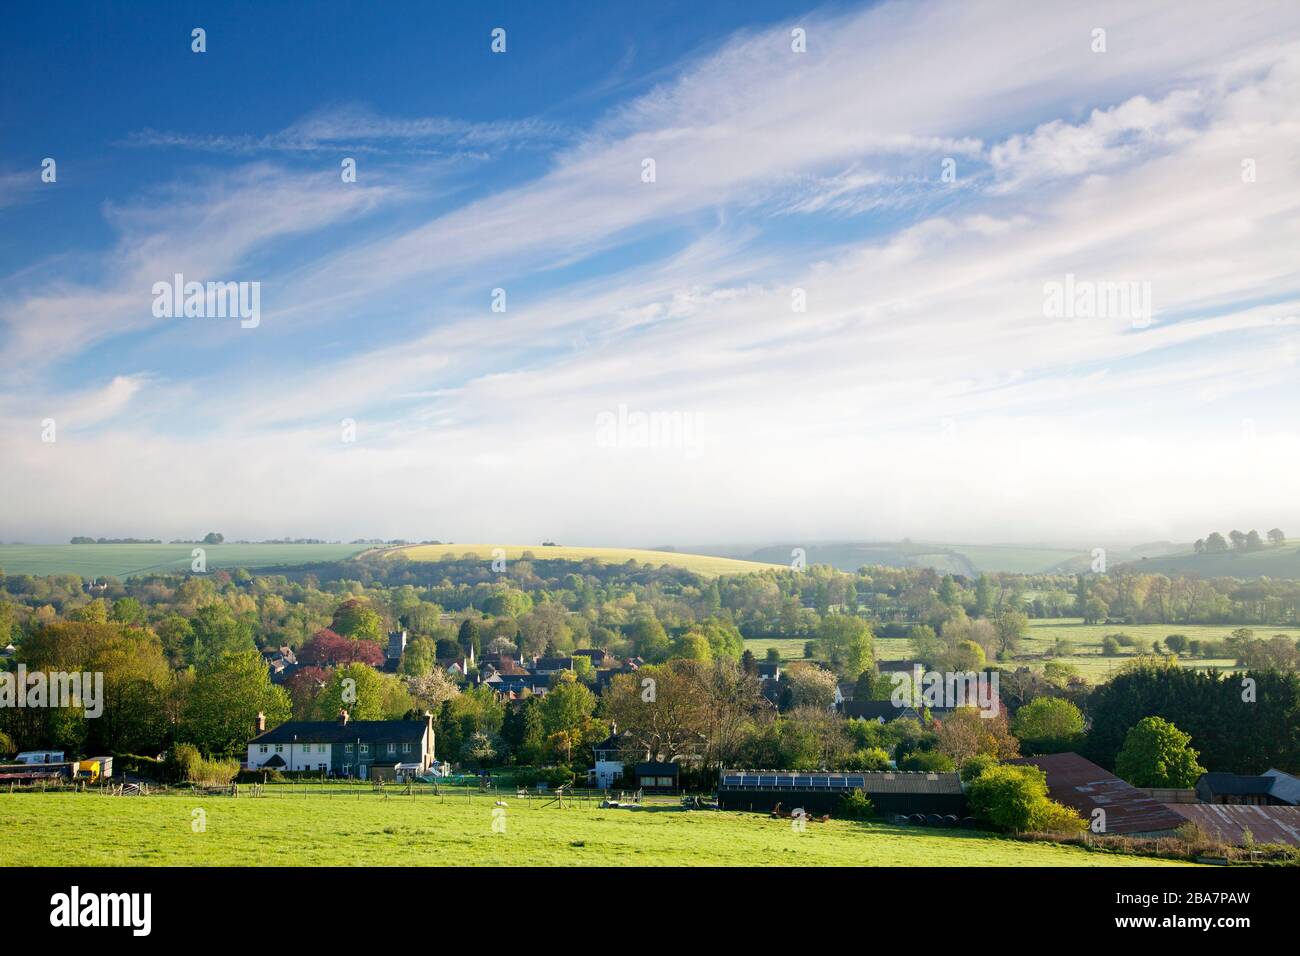 Ein greller Frühlingmorgen im Dorf Wylye in Wiltshire. Stockfoto